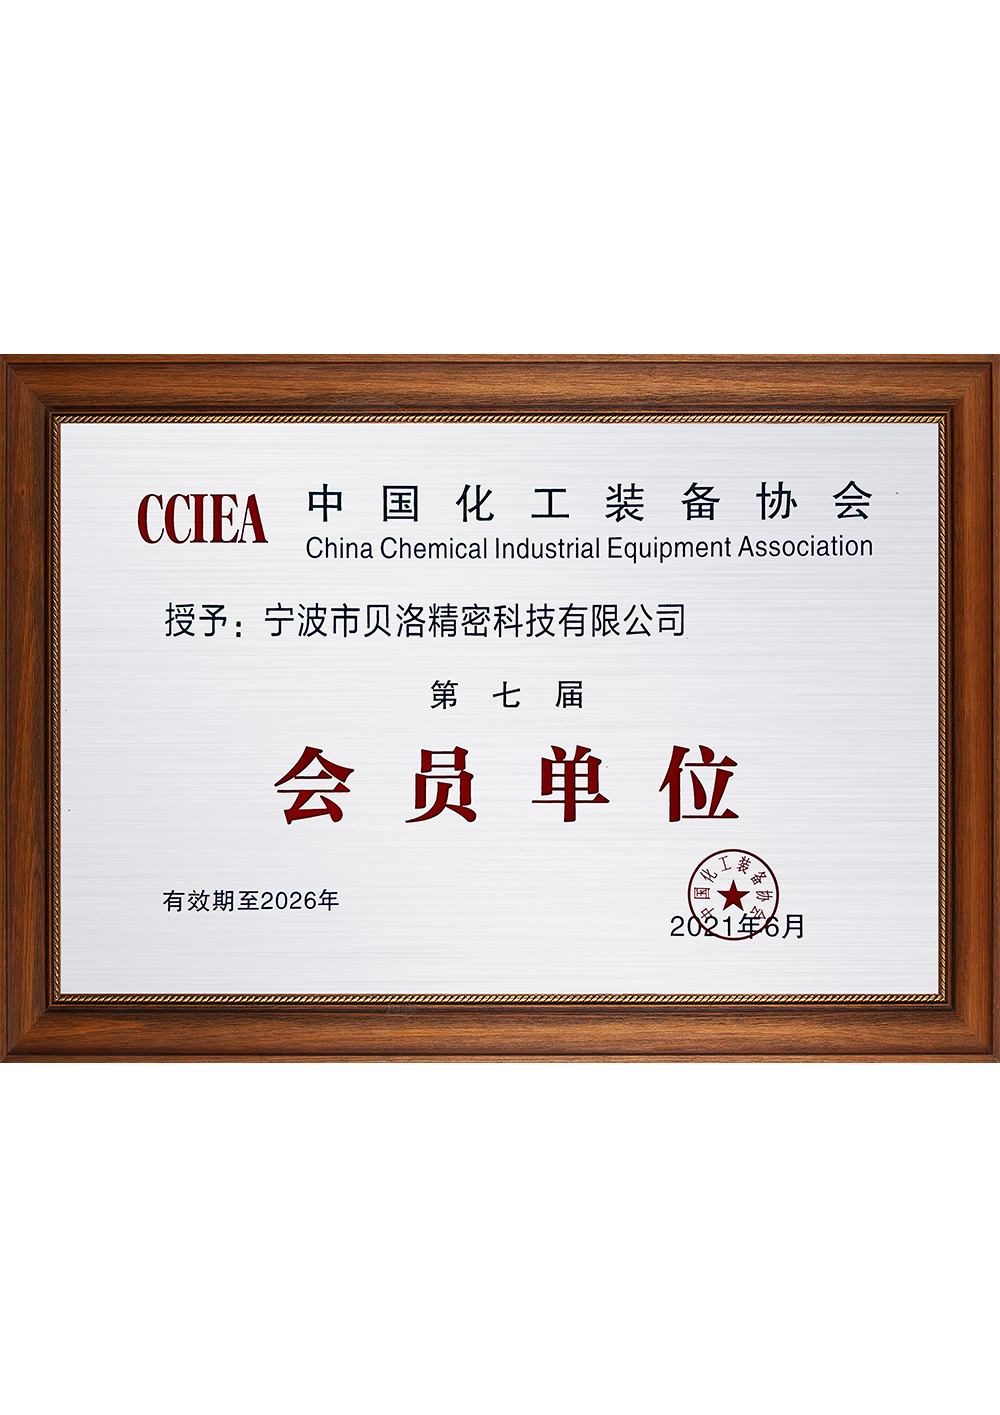 中国化工装备协会第七届会员单位202106